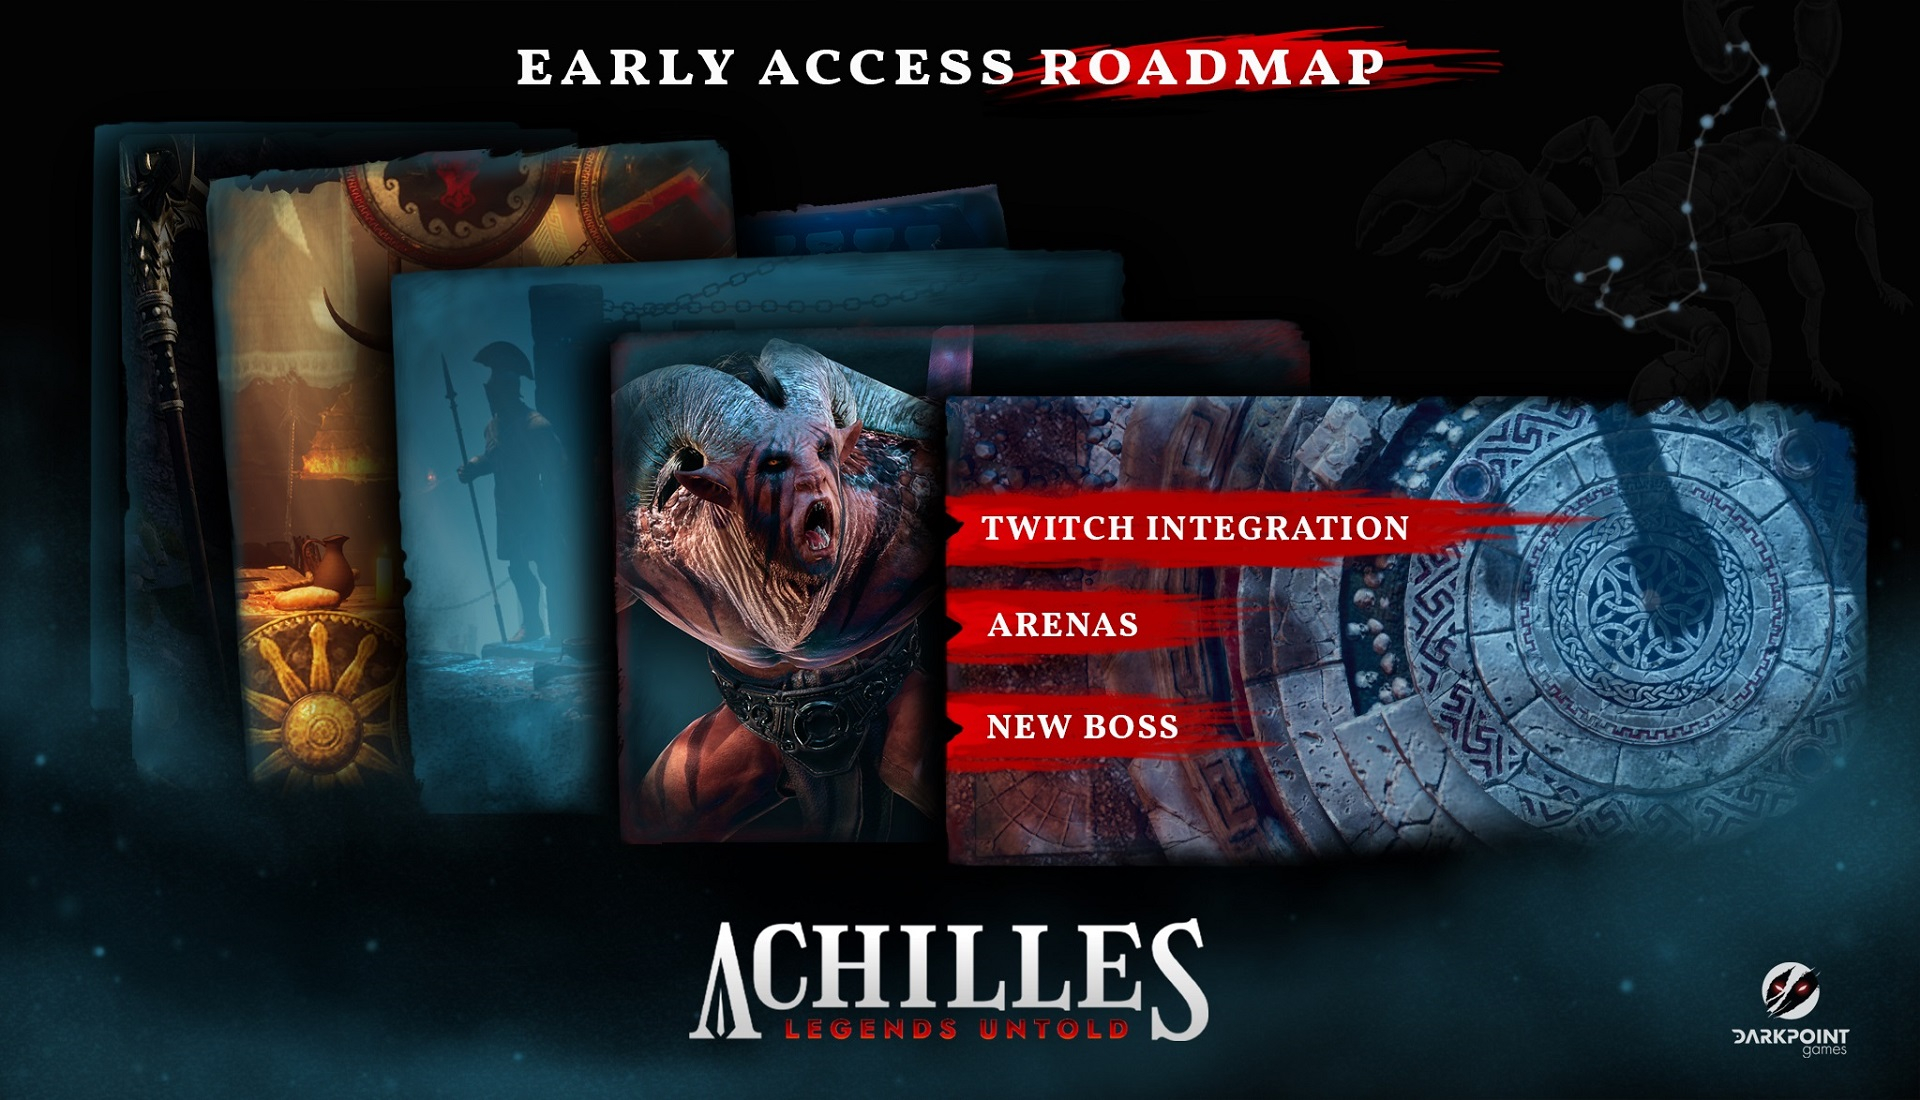 Achilles Legends Untold download the new